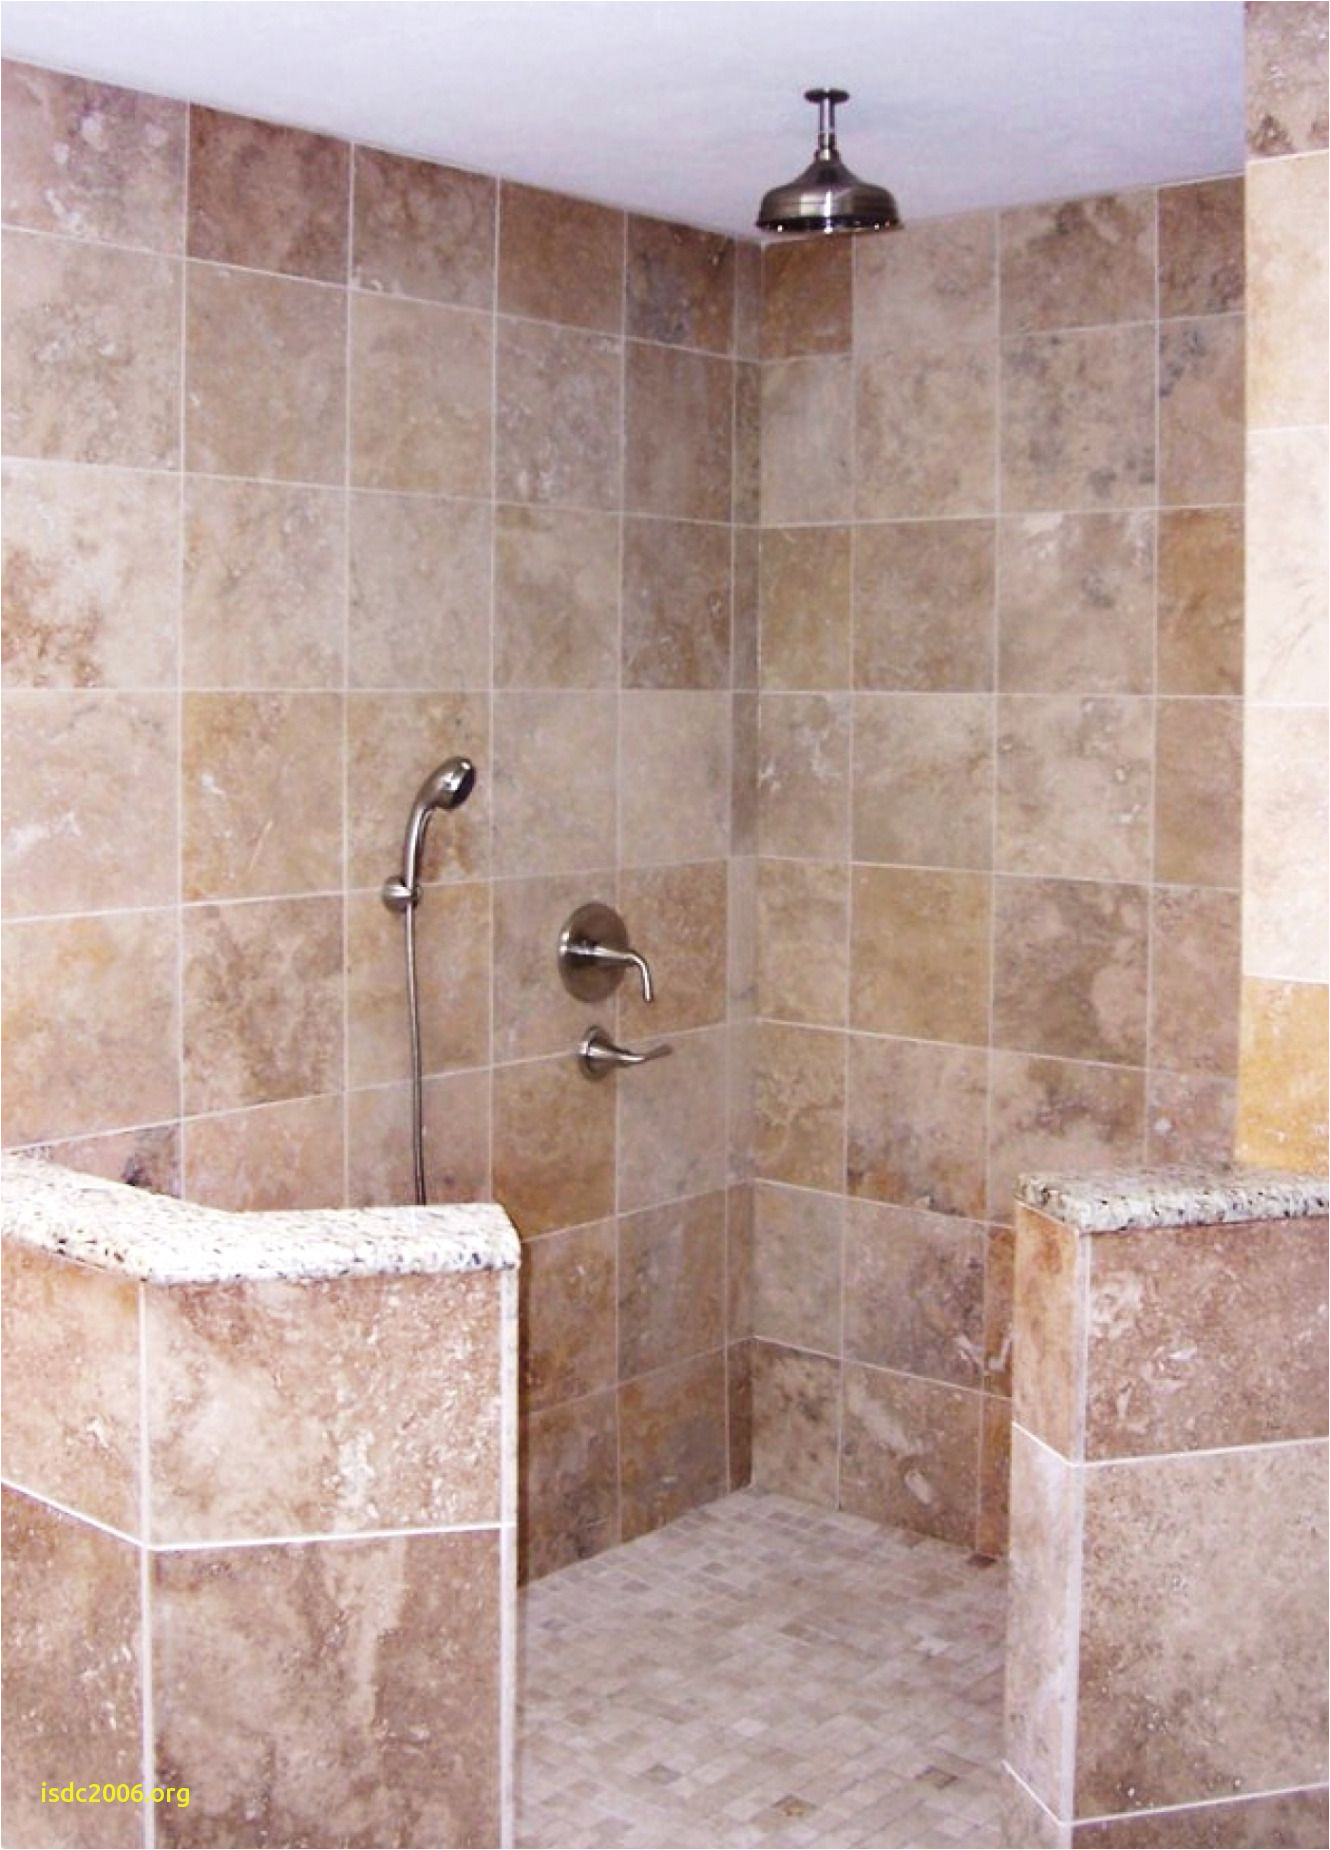 light grey bathroom wall tiles inspirational elegant h sink small bathroom vanities with sinks vanitiesi 0d